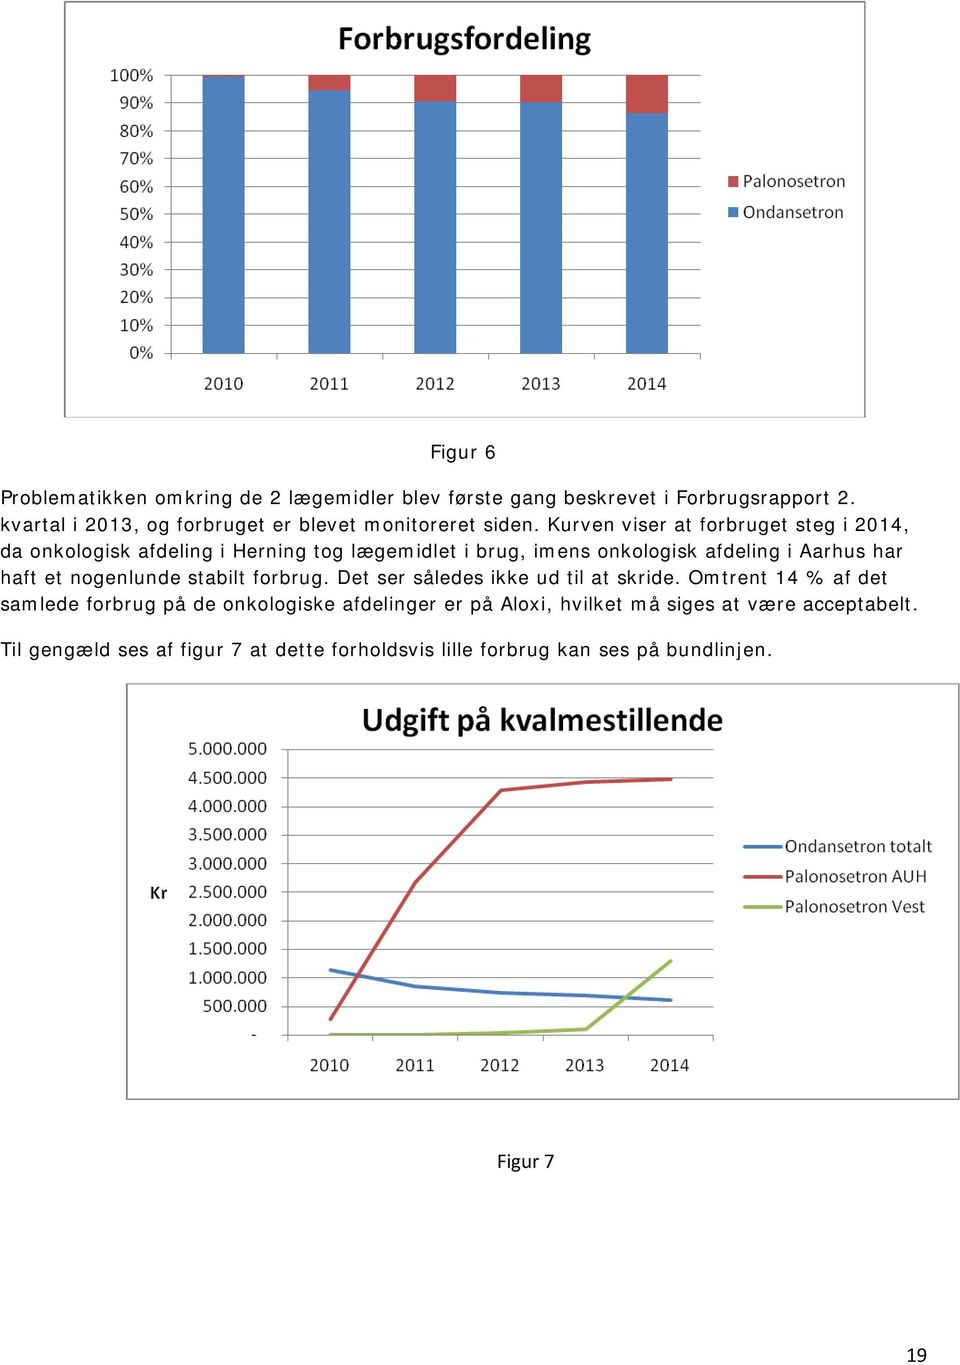 Kurven viser at forbruget steg i 2014, da onkologisk afdeling i Herning tog lægemidlet i brug, imens onkologisk afdeling i Aarhus har haft et